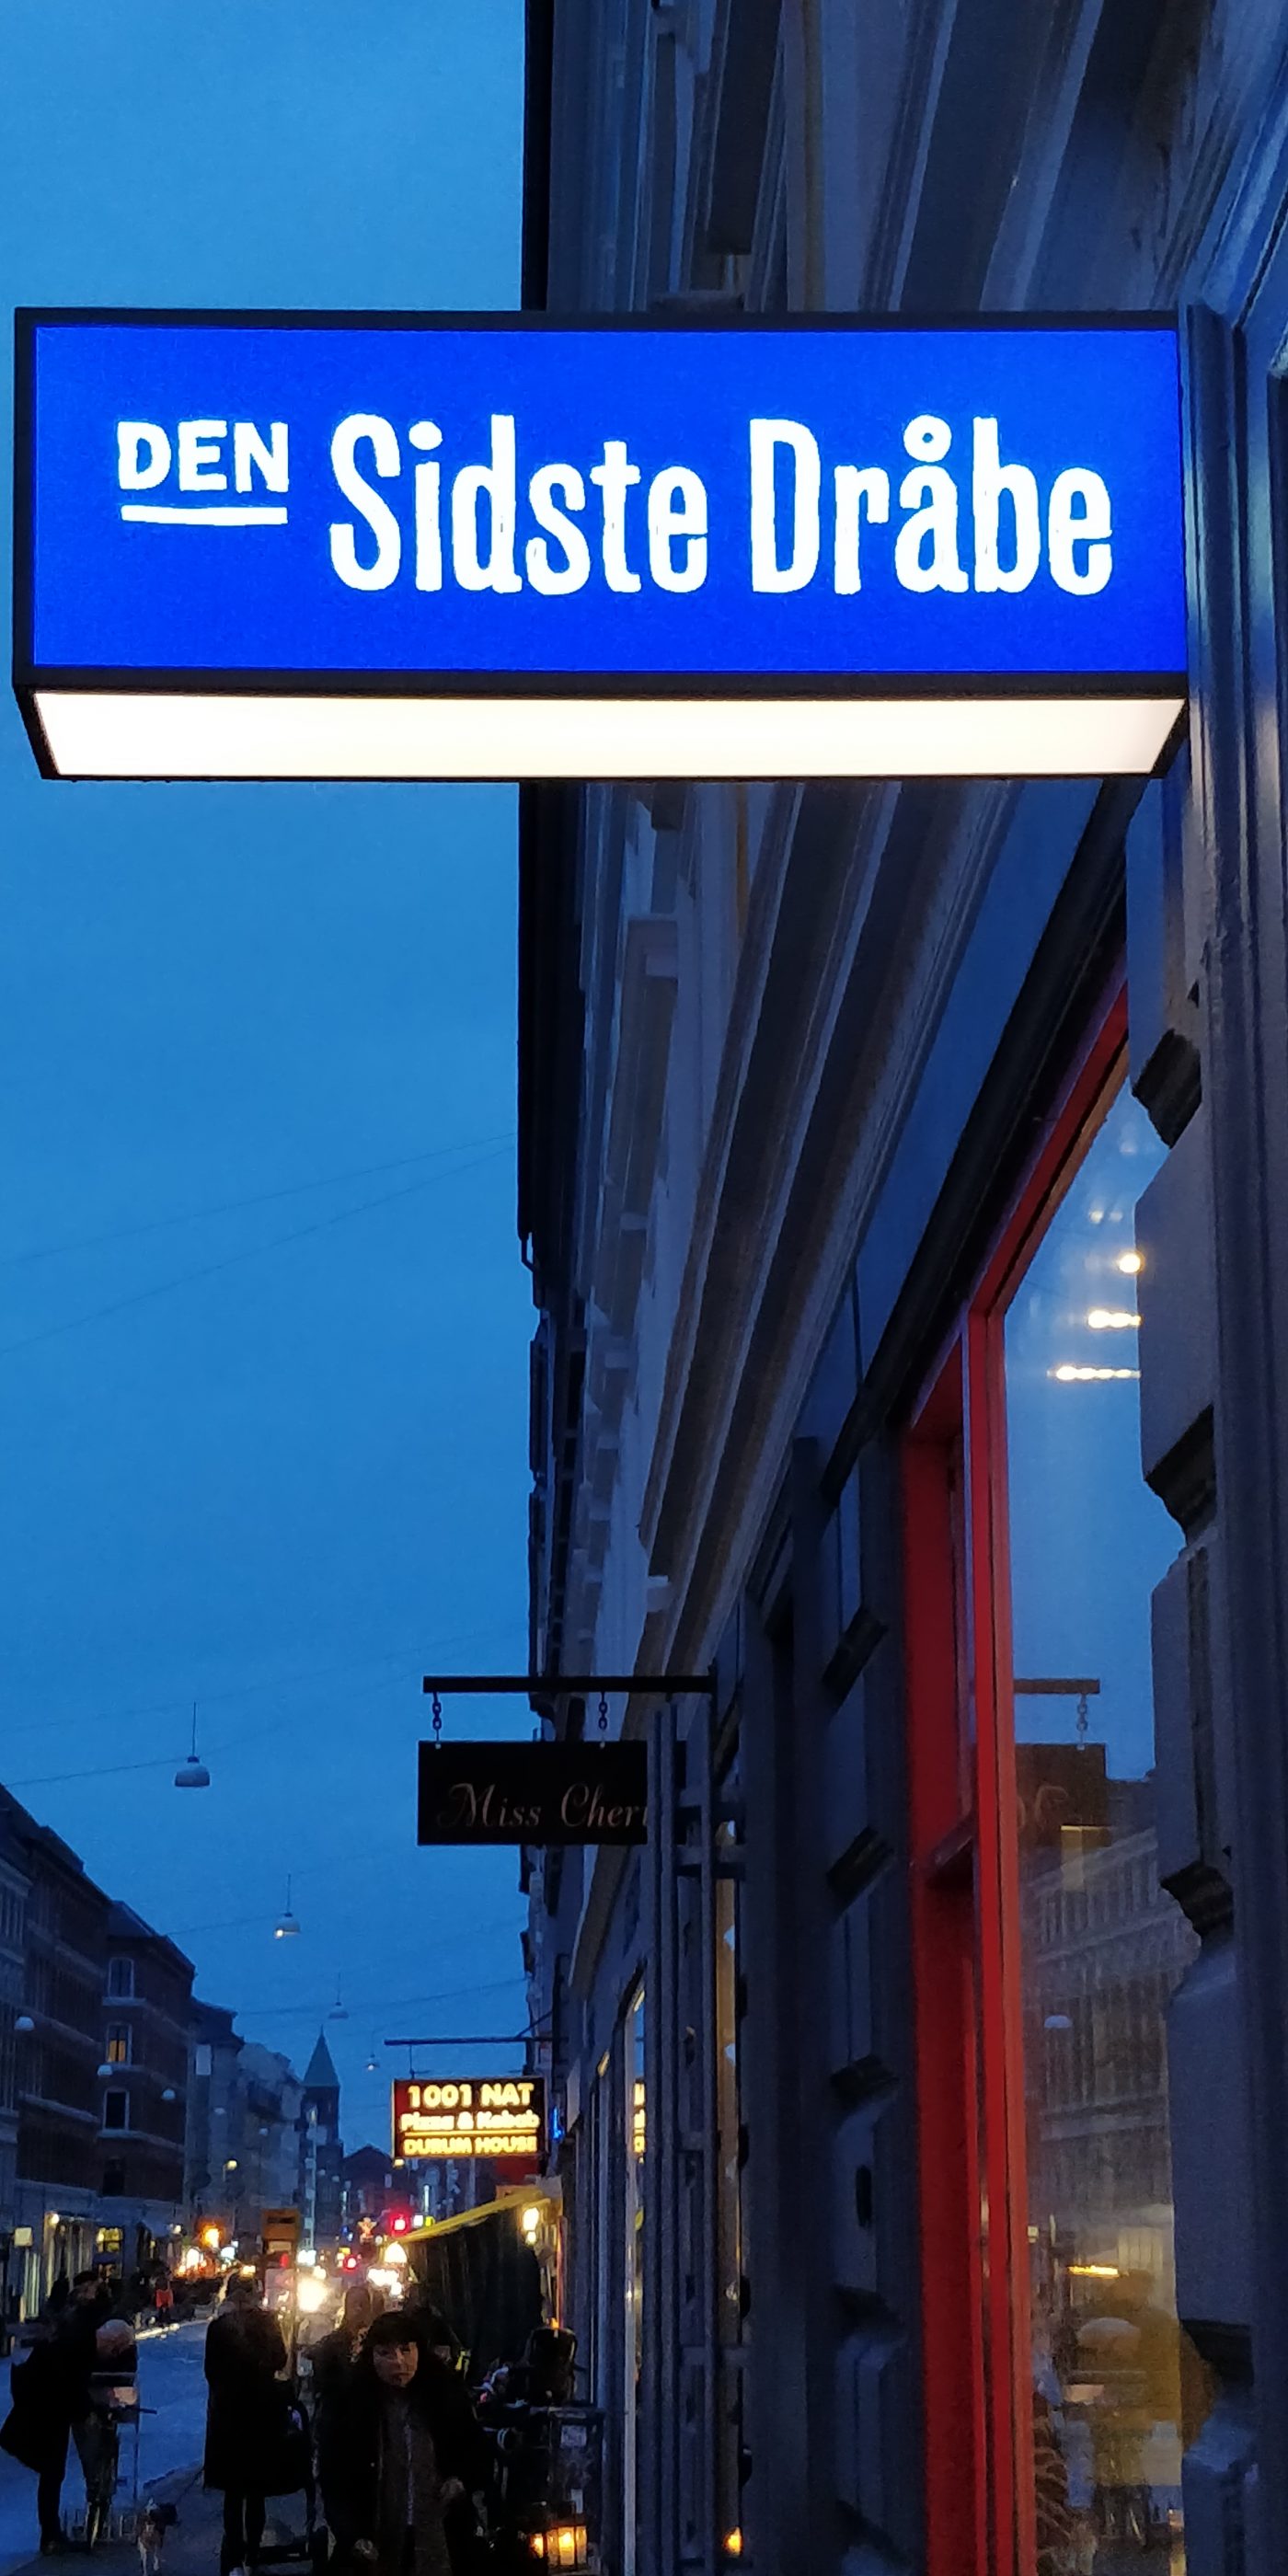 Blå aftenhimmel over Istedgade, Købehavn. Et skilt med teksten "Den sidste dråbe".